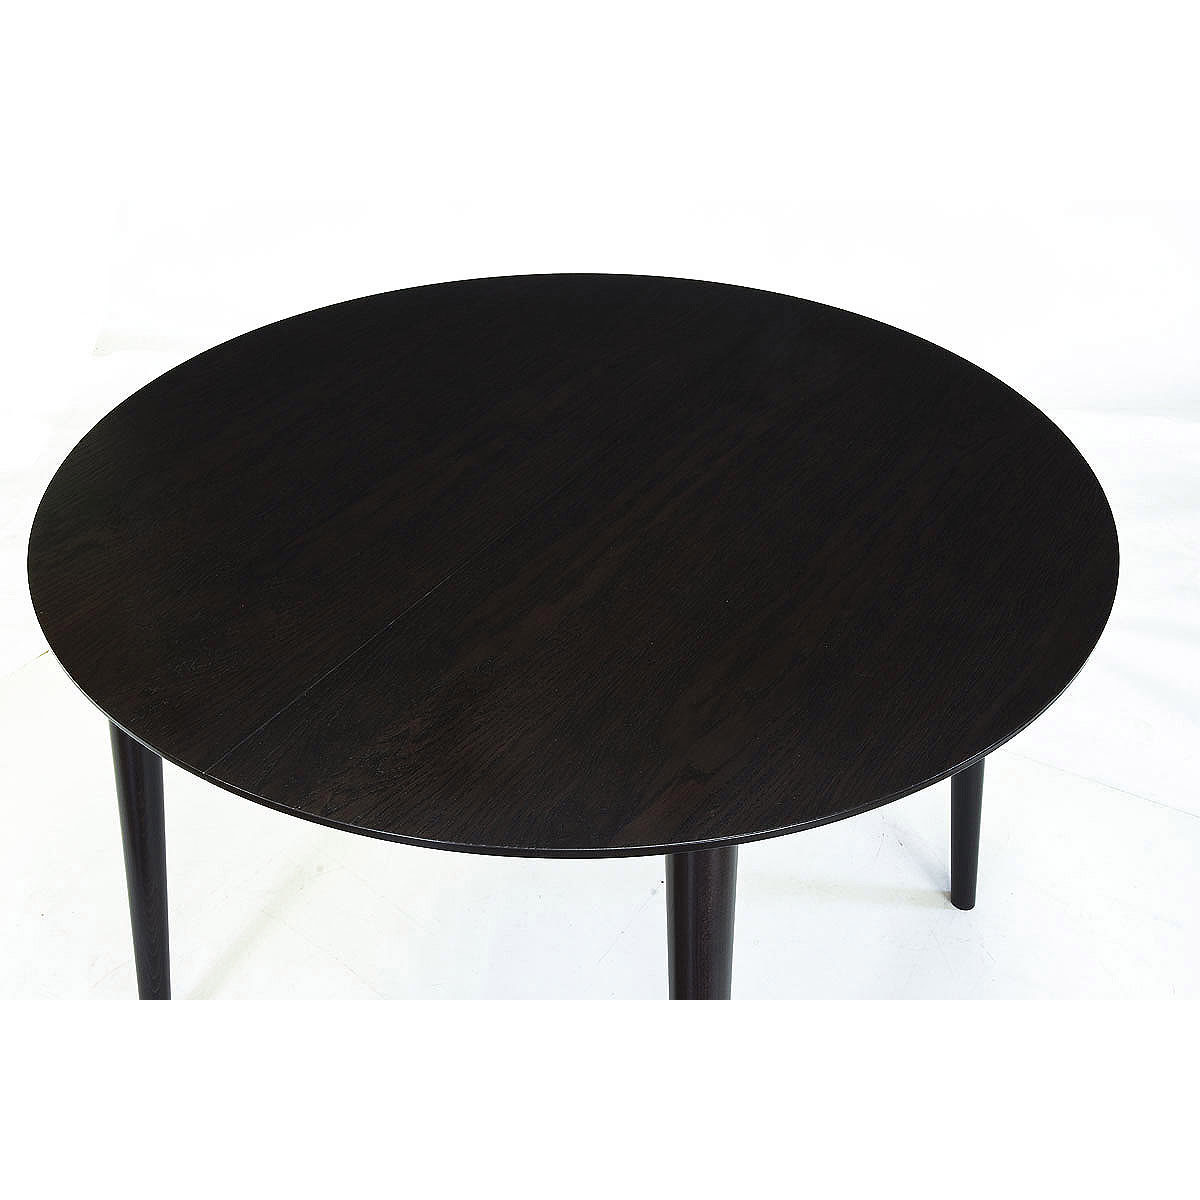 Стол обеденный Стелла Линда-2М, круглый раздвижной, 105(137)x105x75